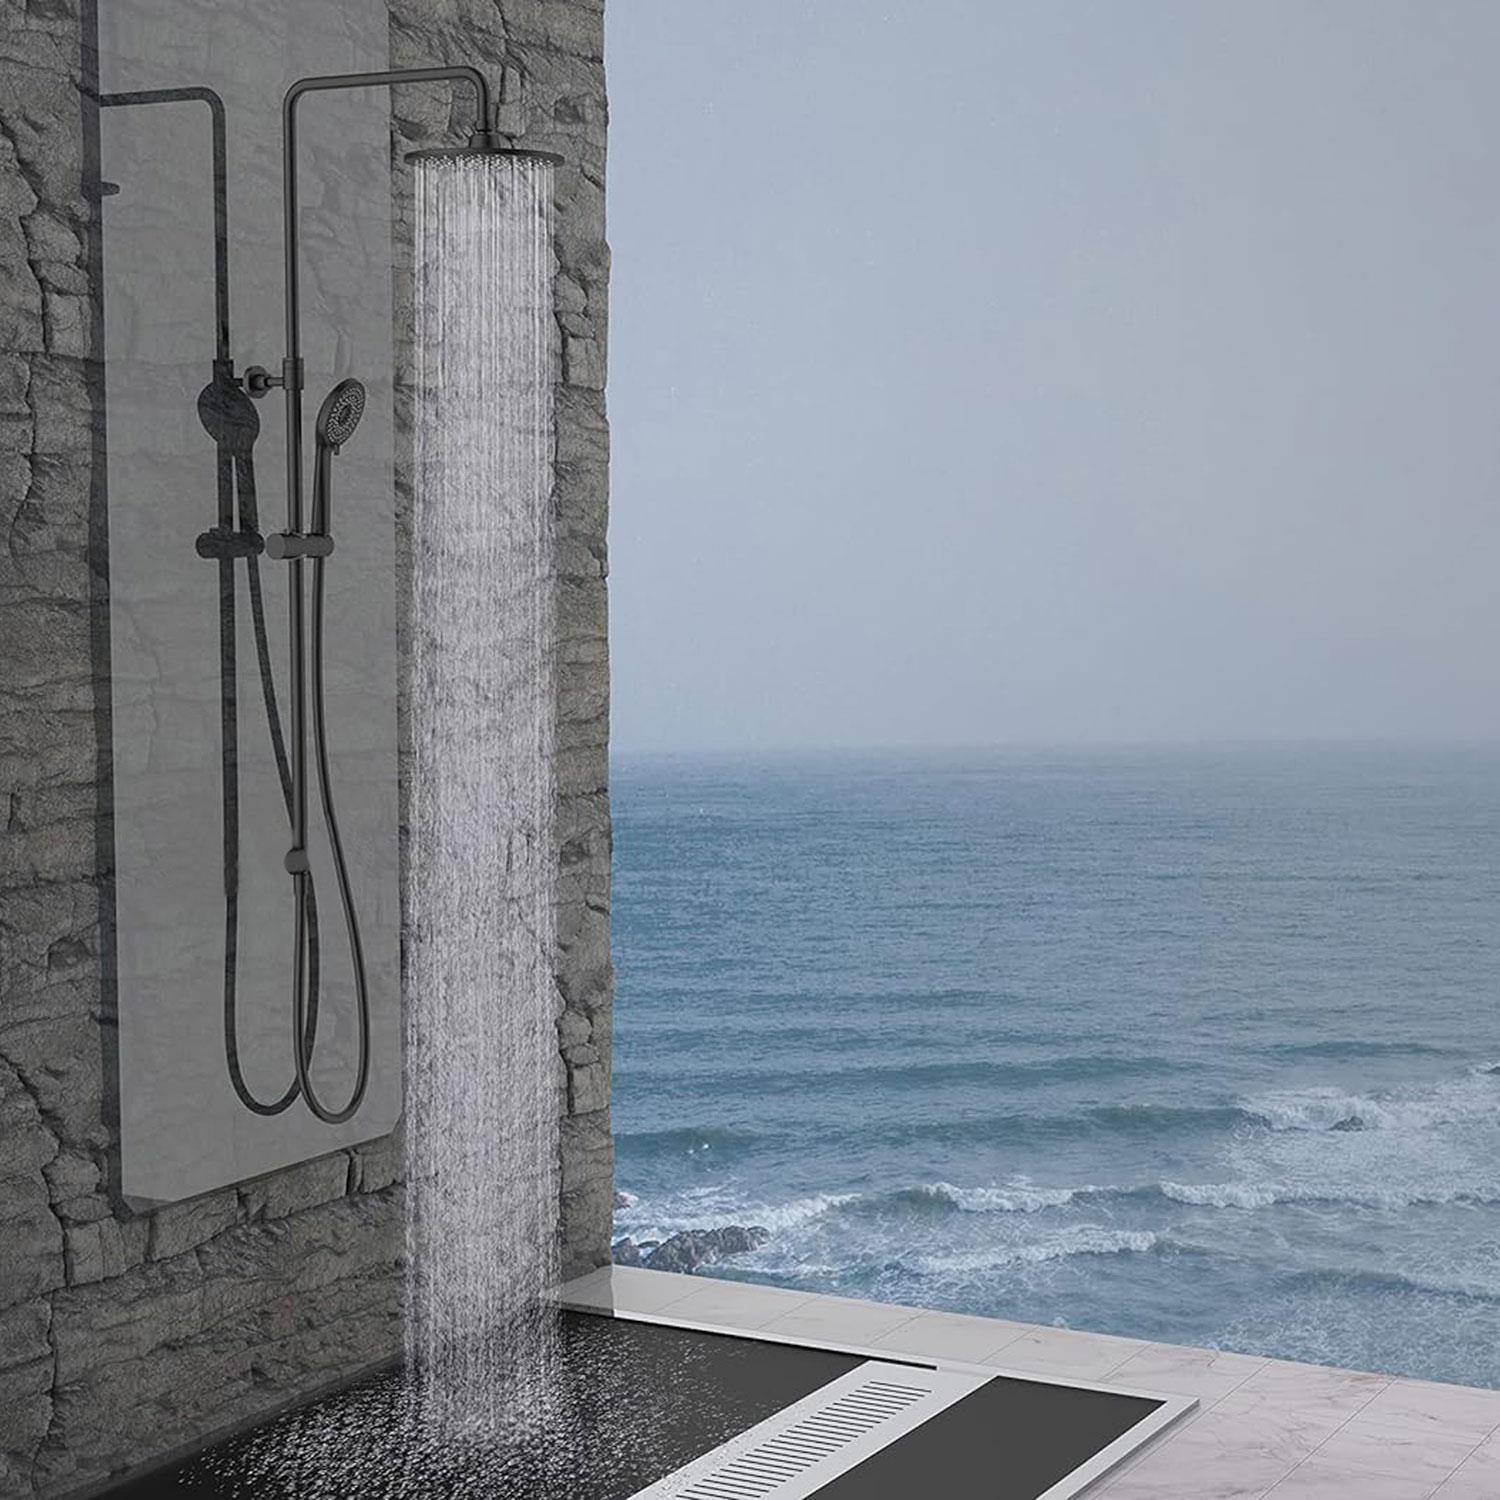 Robot Tepe Duş Seti Takımı Shower Yağmurlama Oval Banyo Masaj Duş Başlığı Sistemi Mat Siyah